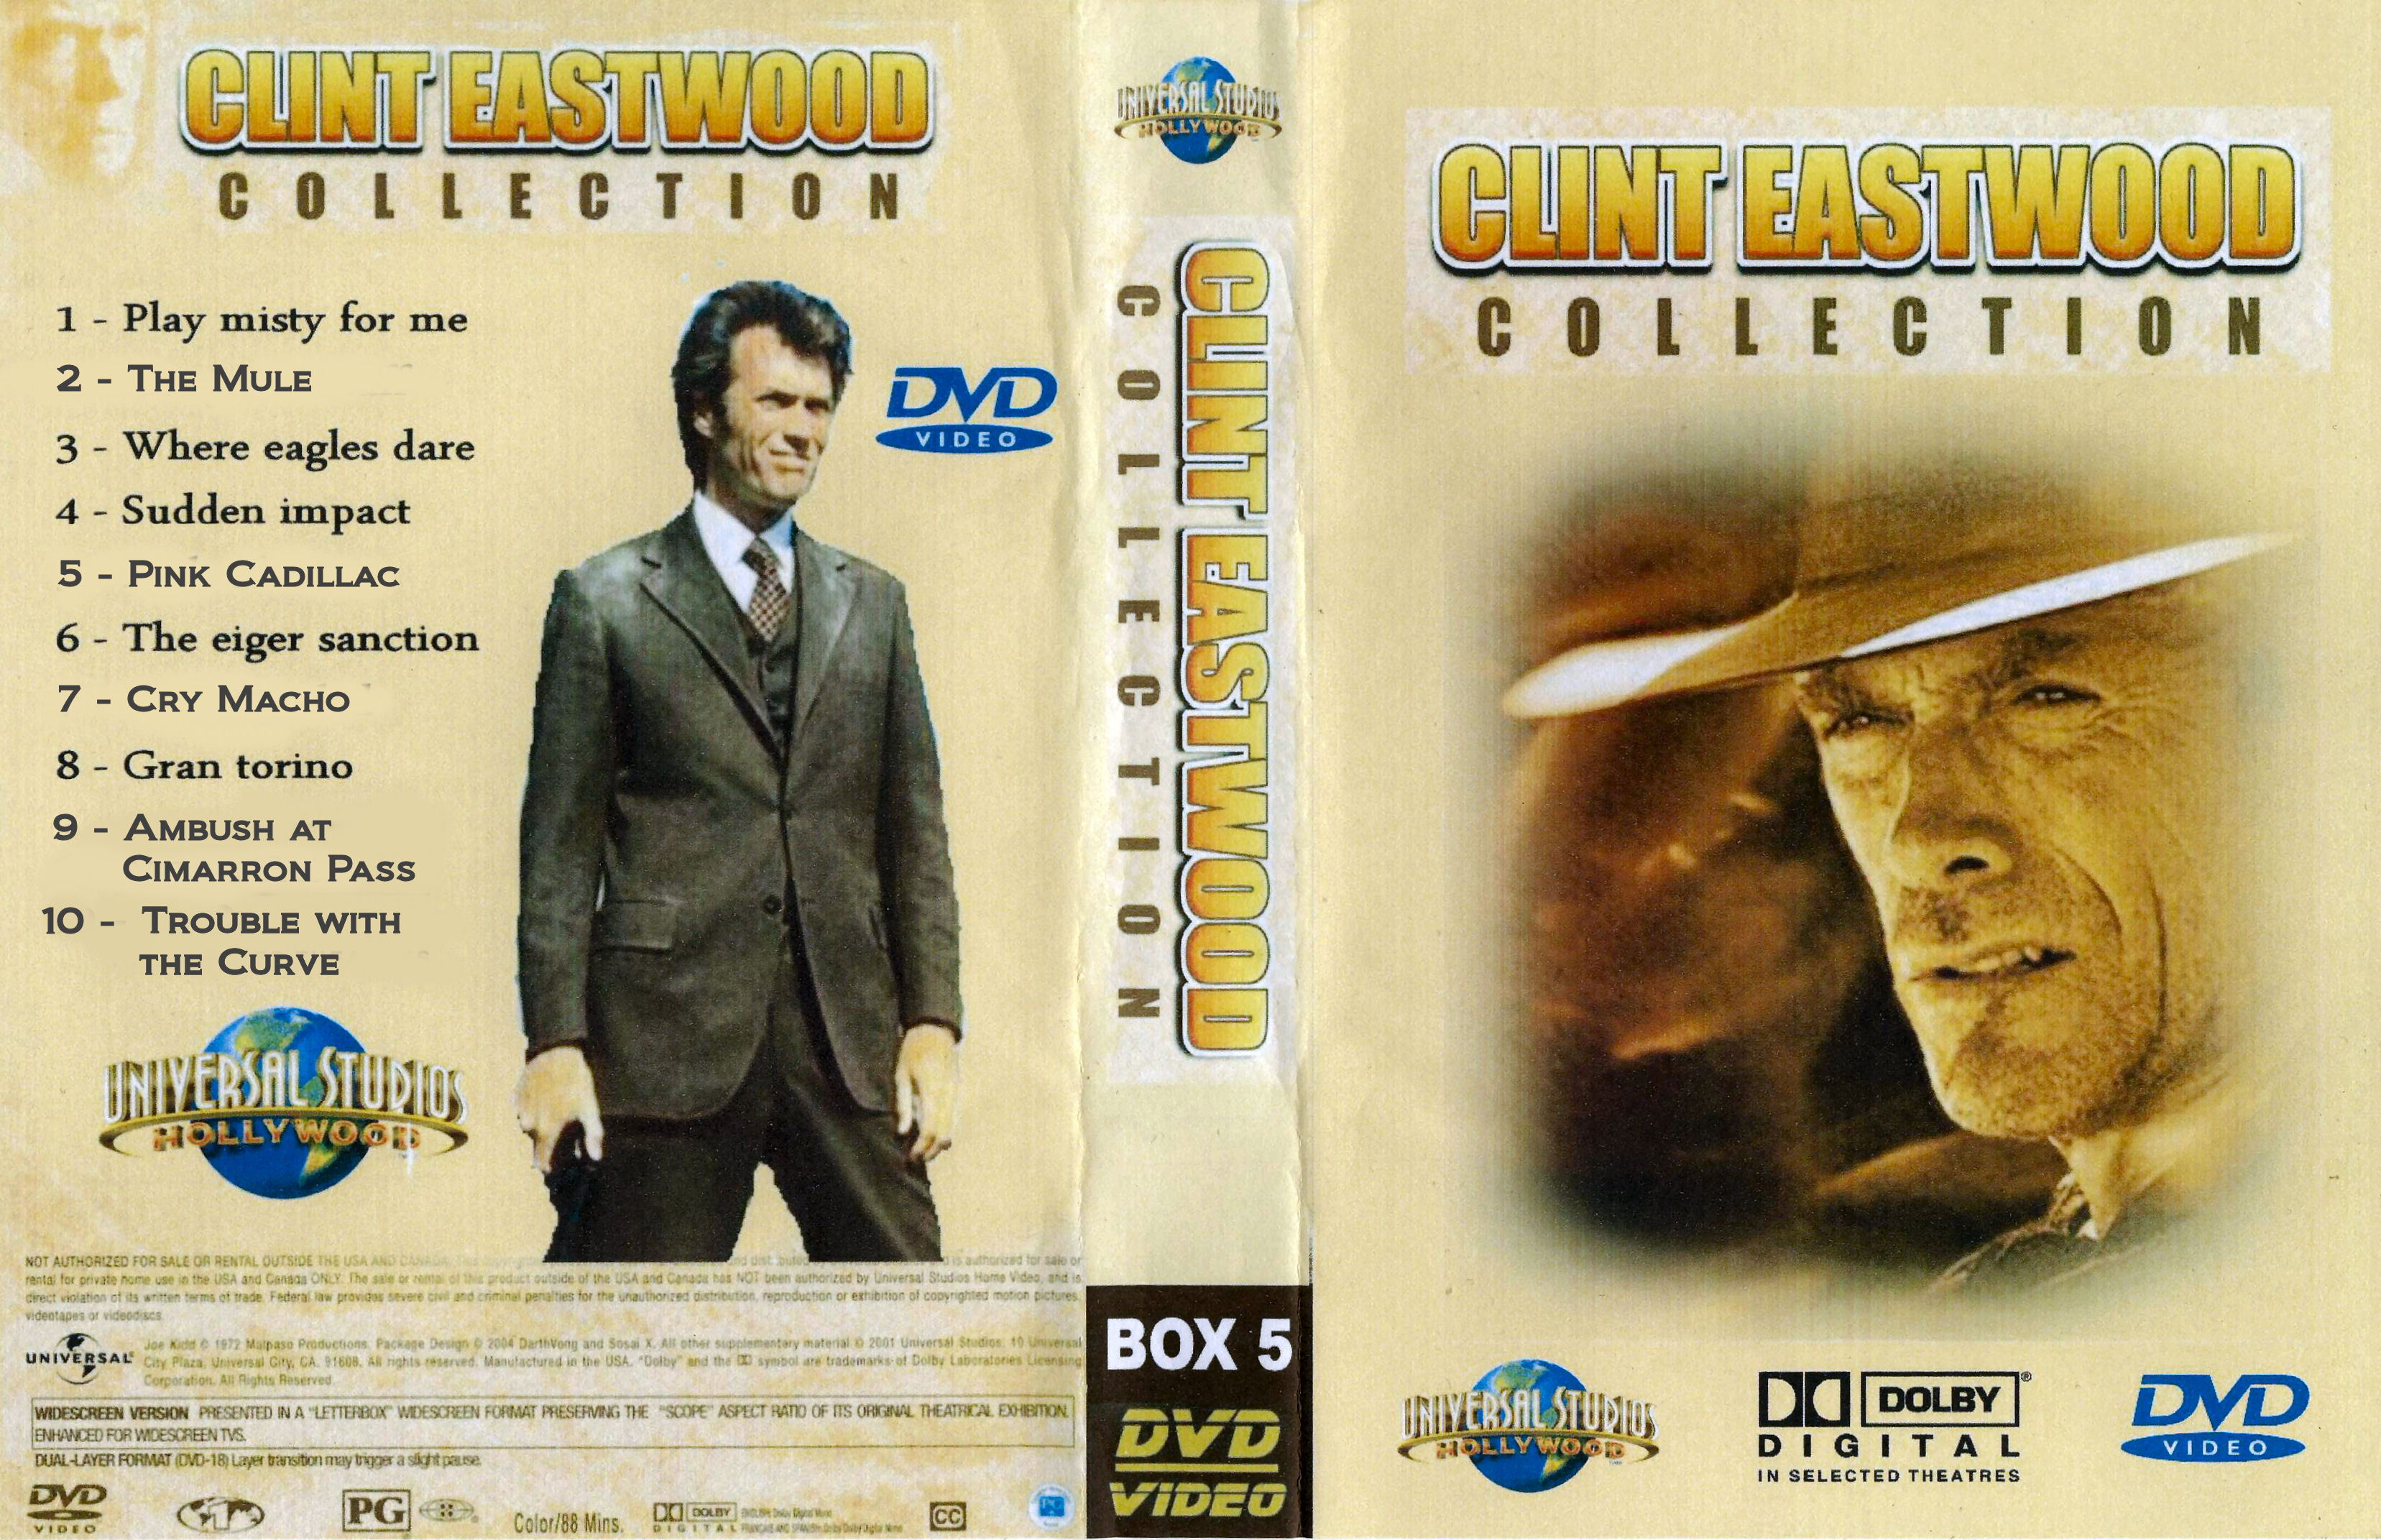 Clint Eastwood Collectie Box 5 DvD 7 van 10